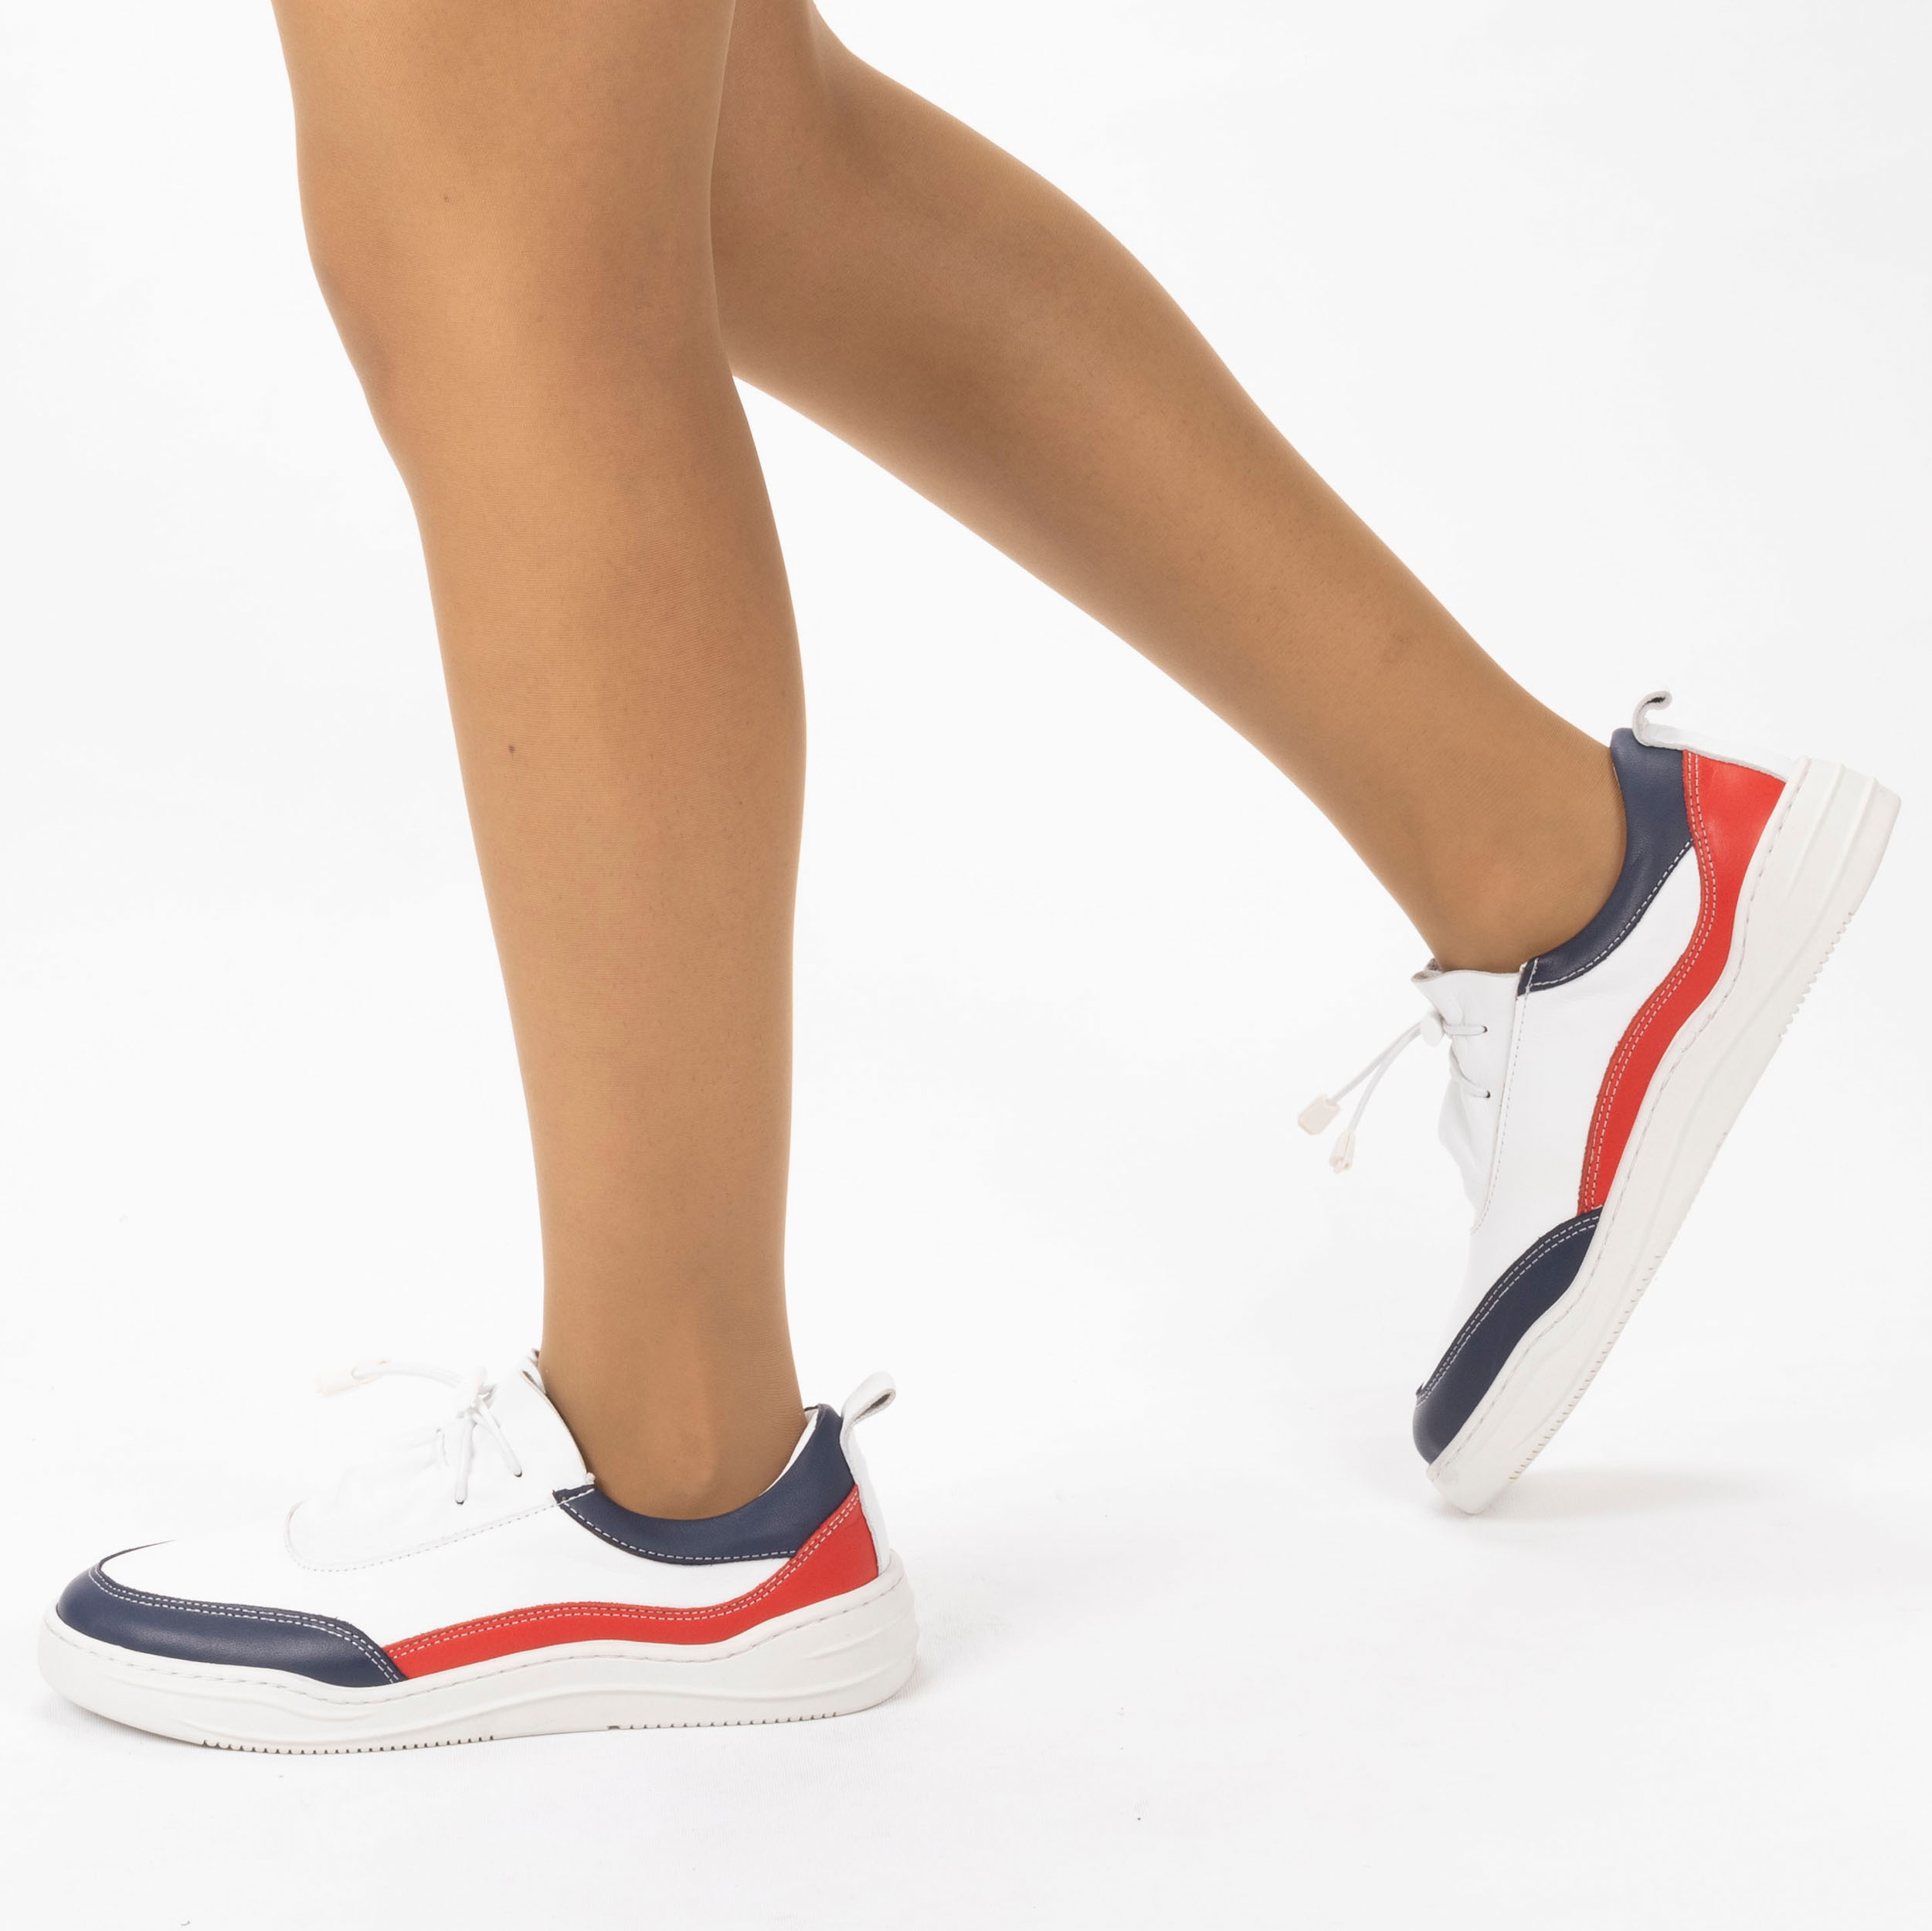 Kadın Hakiki Deri  Günlük Spor Ayakkabı / Sneakers, Renk: Lacivert - Kırmızı, Beden: 36